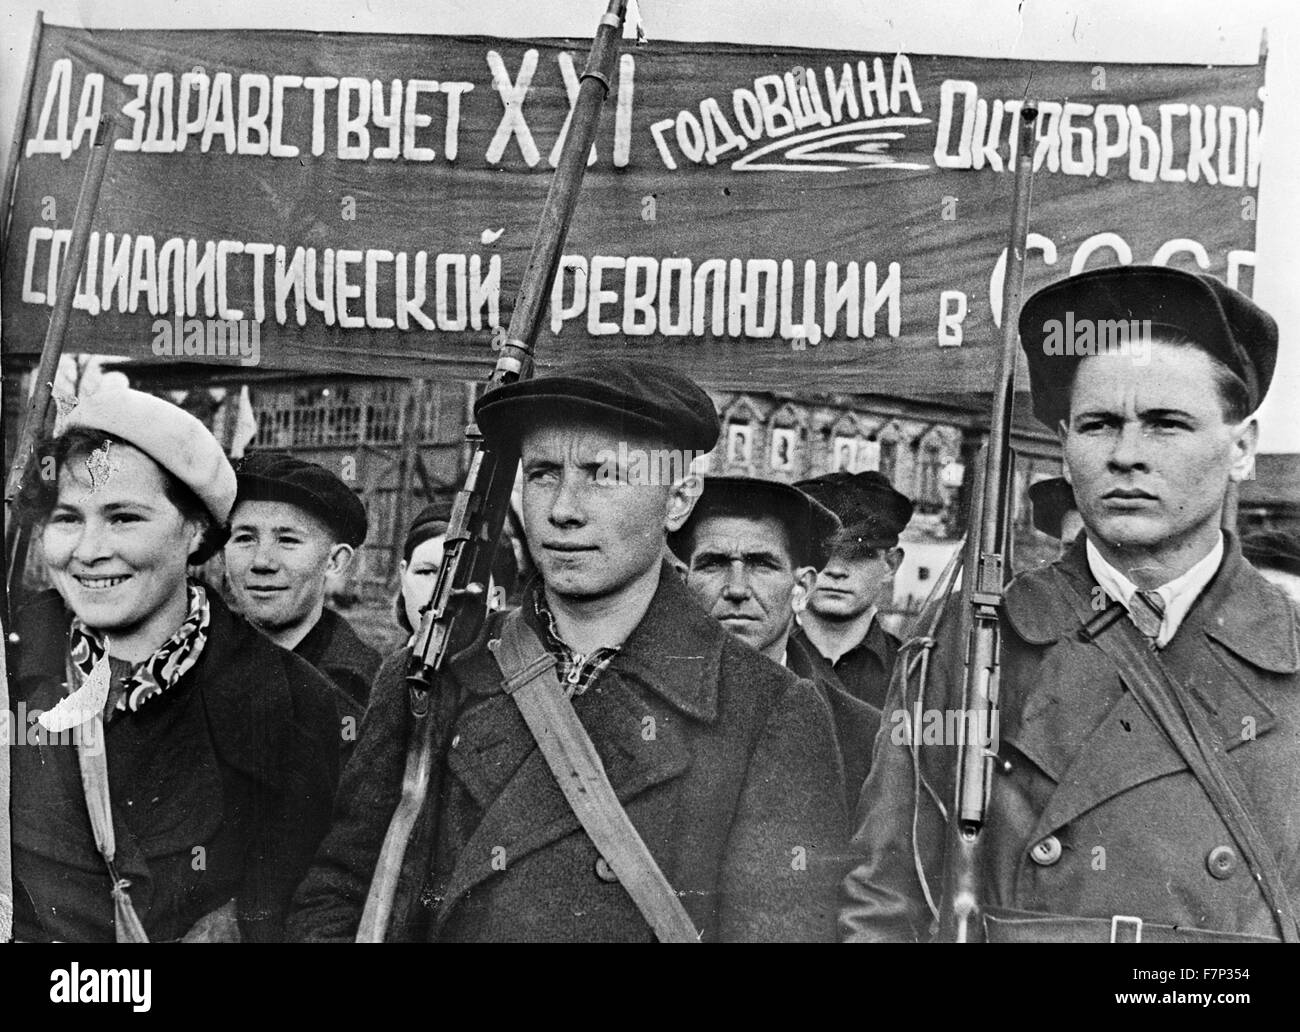 Fotografia di lavoratori in fabbrica la perforazione con armi da fuoco nel loro tempo libero in URSS. Datata 1940 Foto Stock